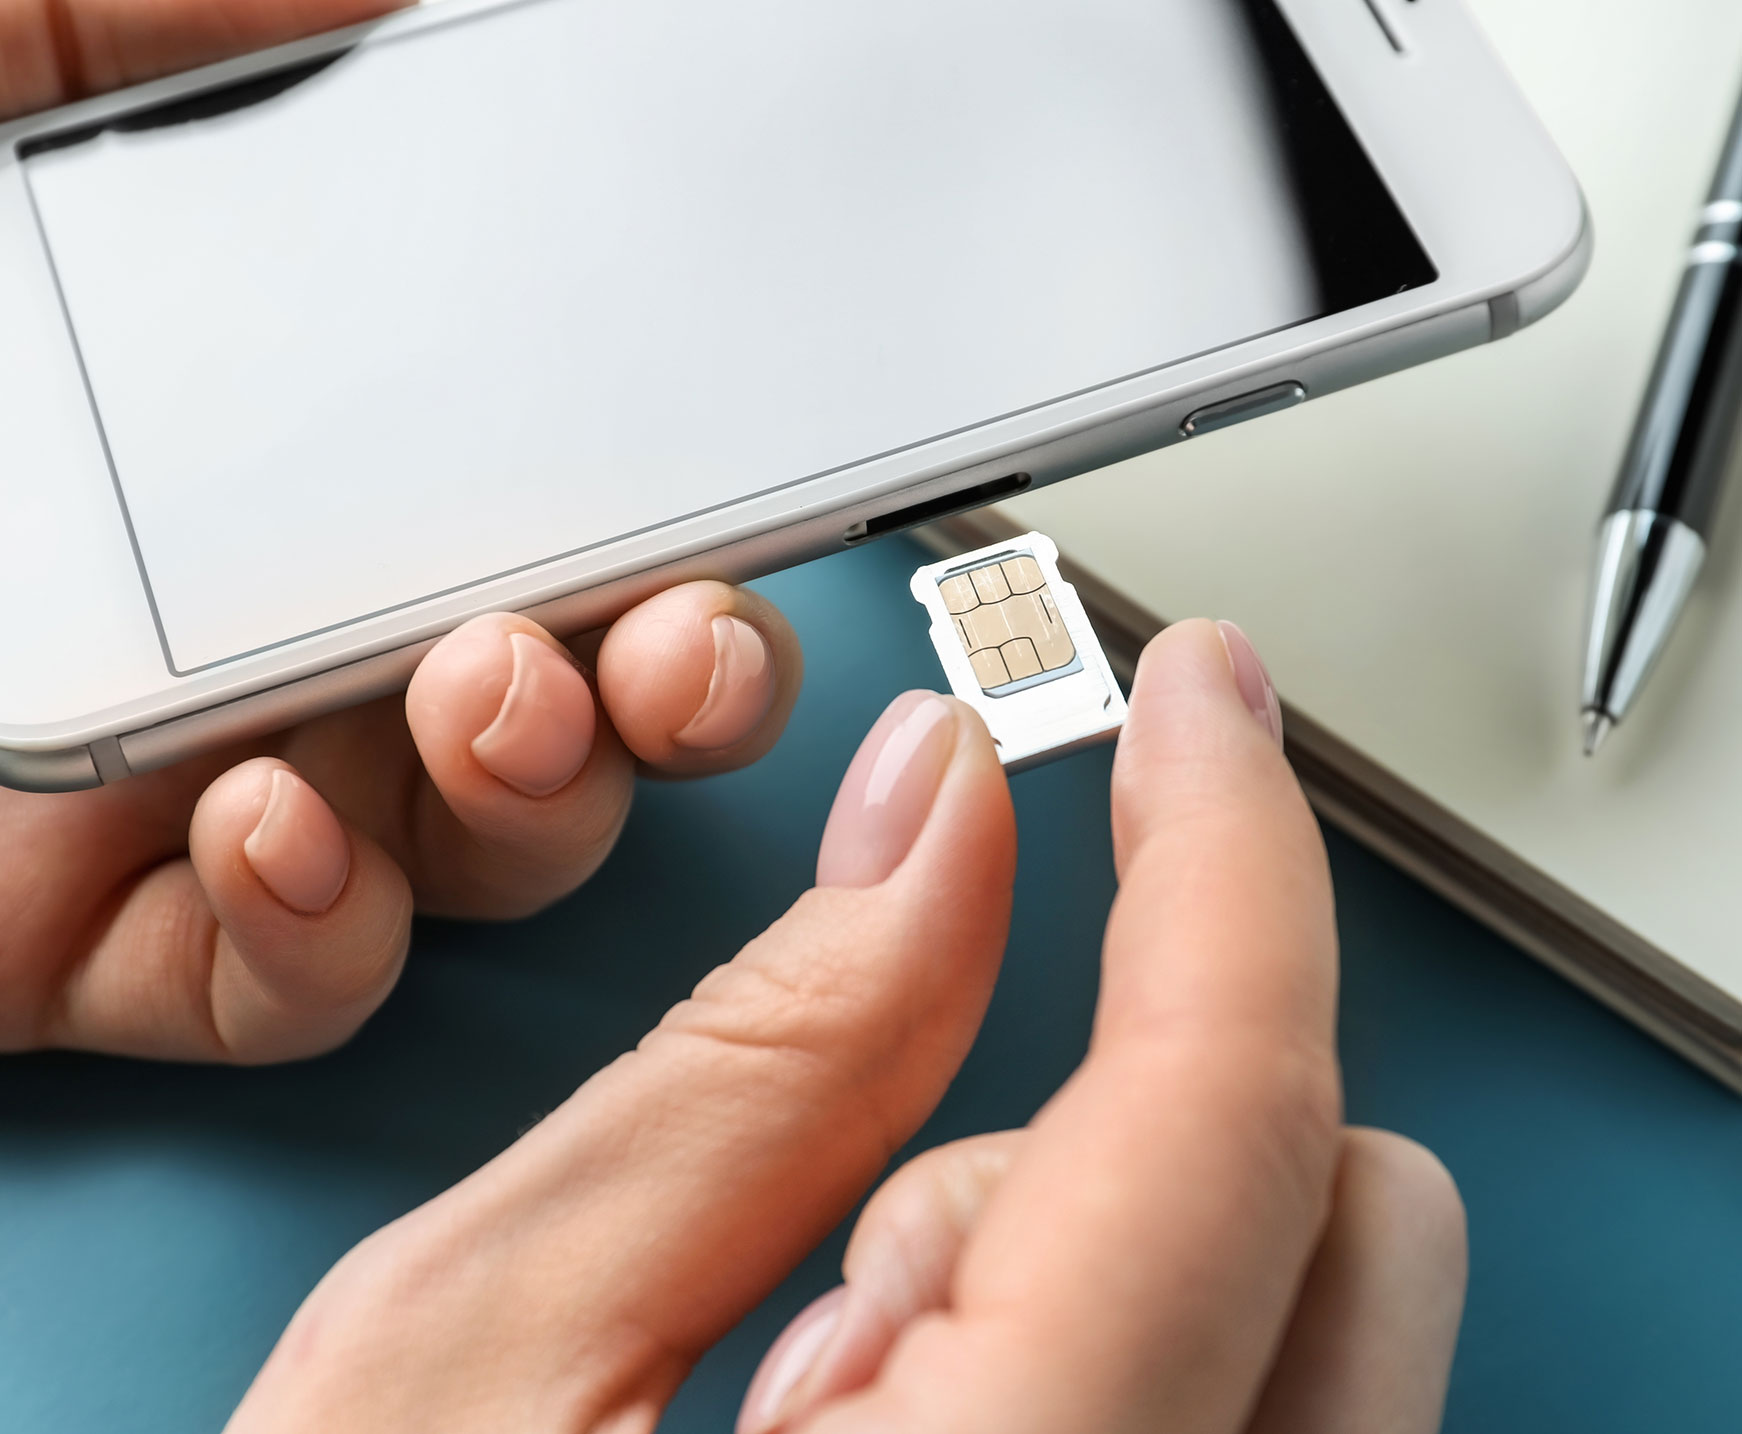 SIM-Only Frau steckt SIM-Karte in Mobiltelefon ein